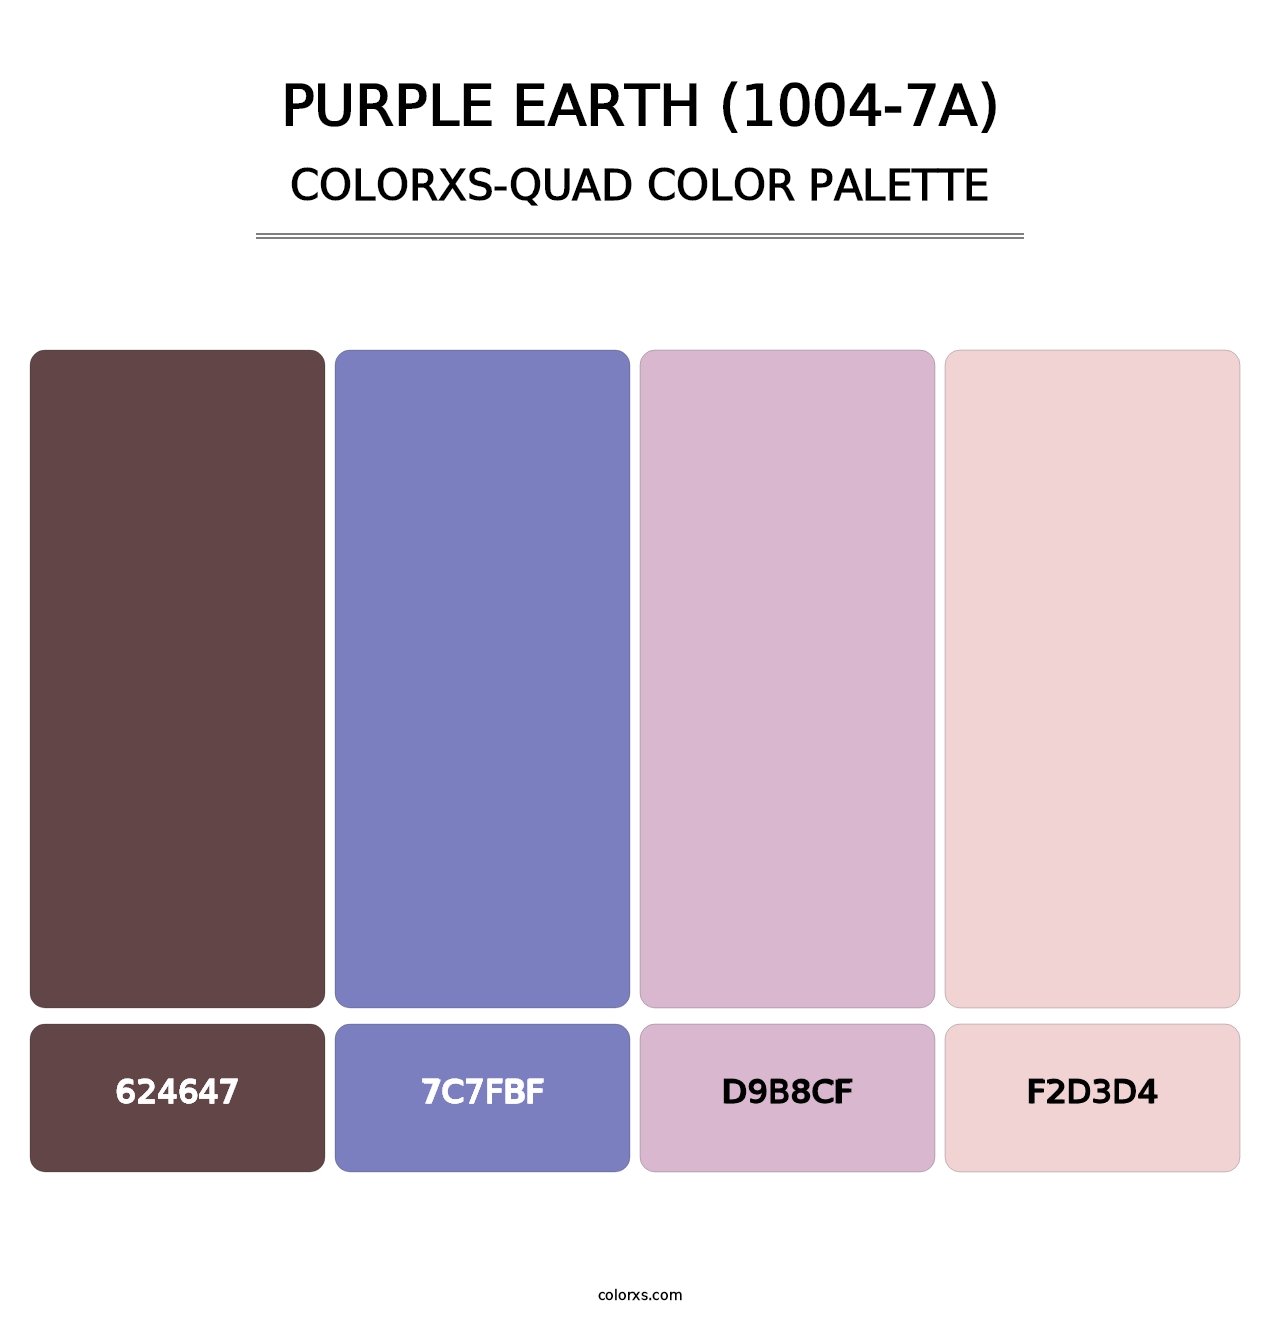 Purple Earth (1004-7A) - Colorxs Quad Palette